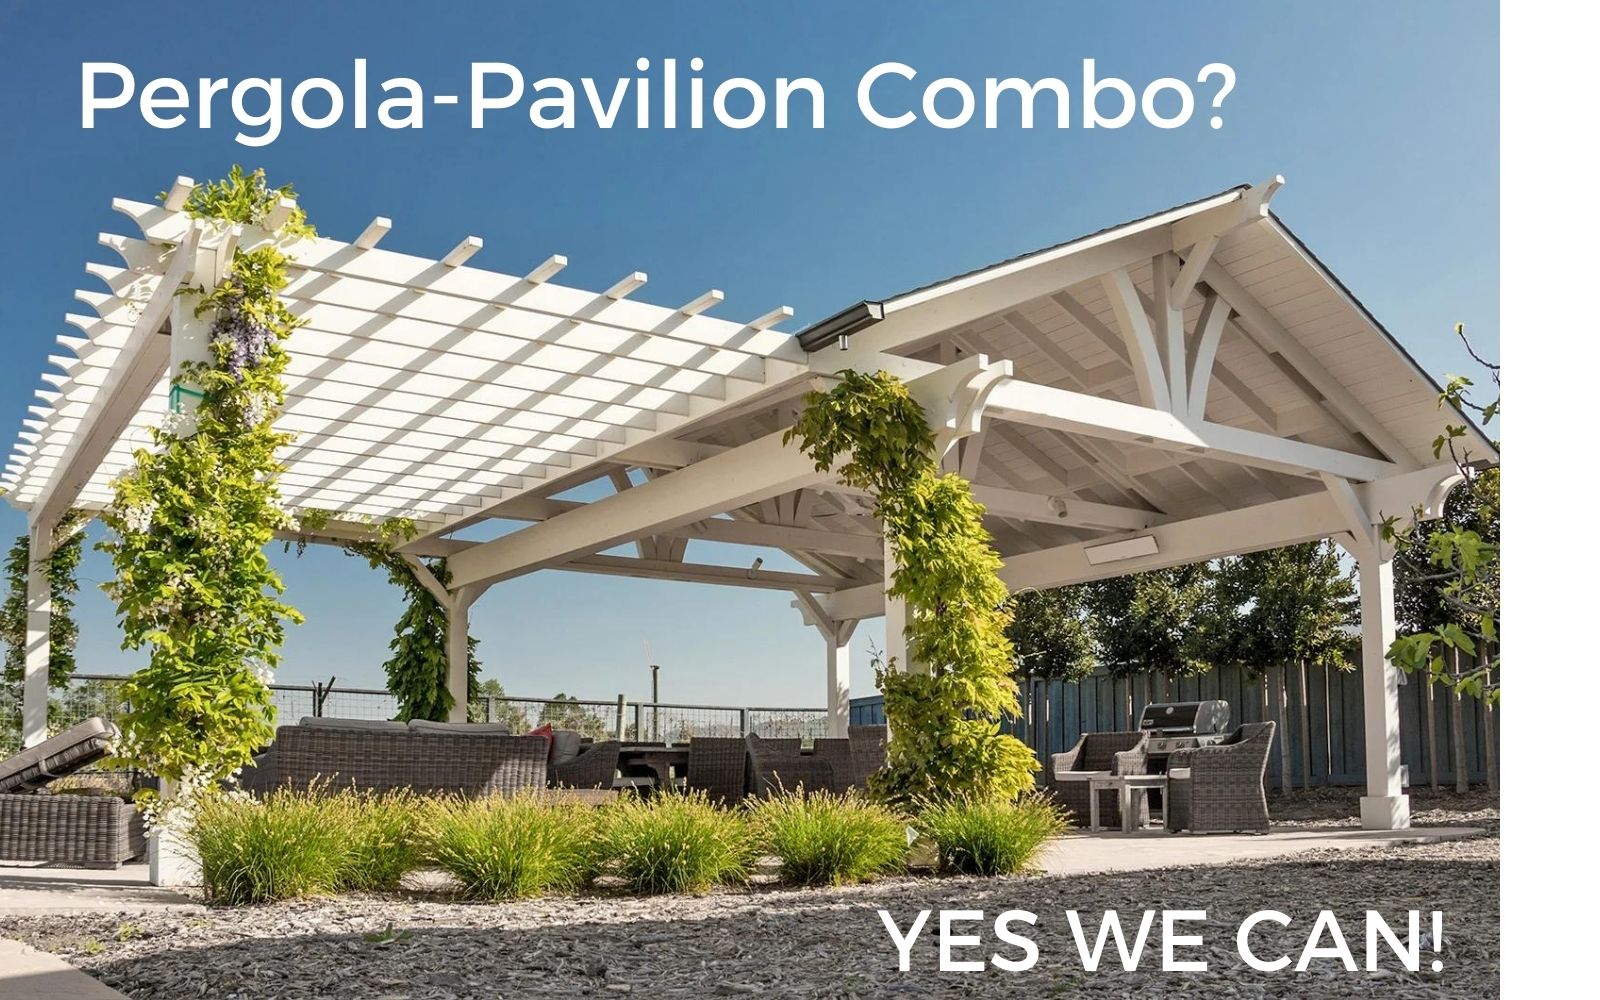 Pergola-Pavilion Combo? Yes We Can!